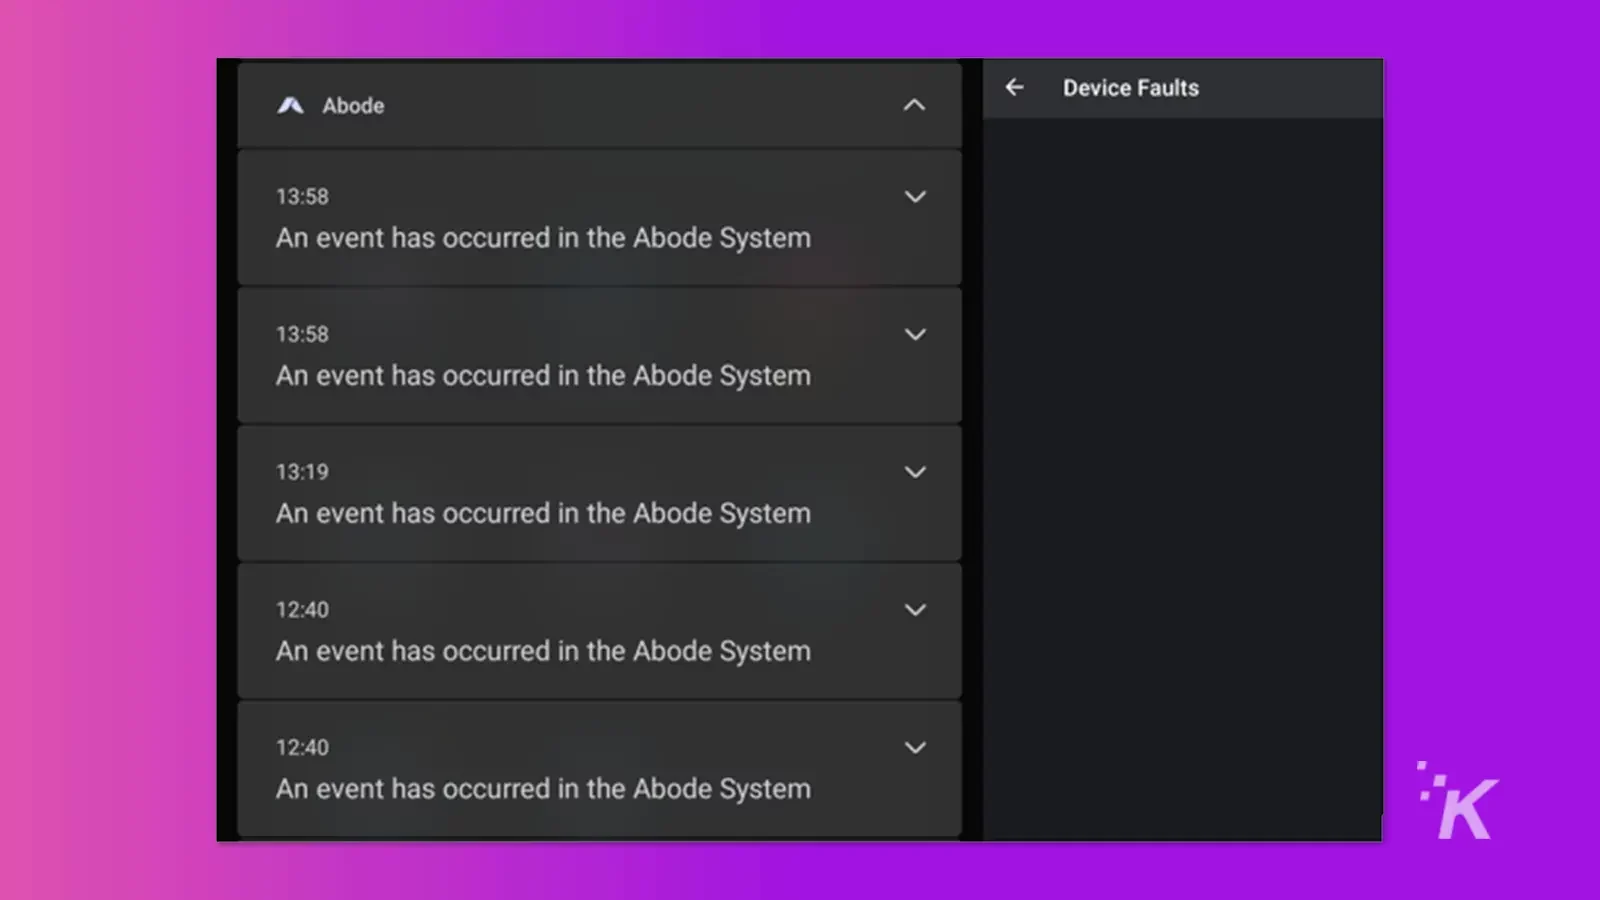 Adobe-Türklingel-App zeigt Fehler an